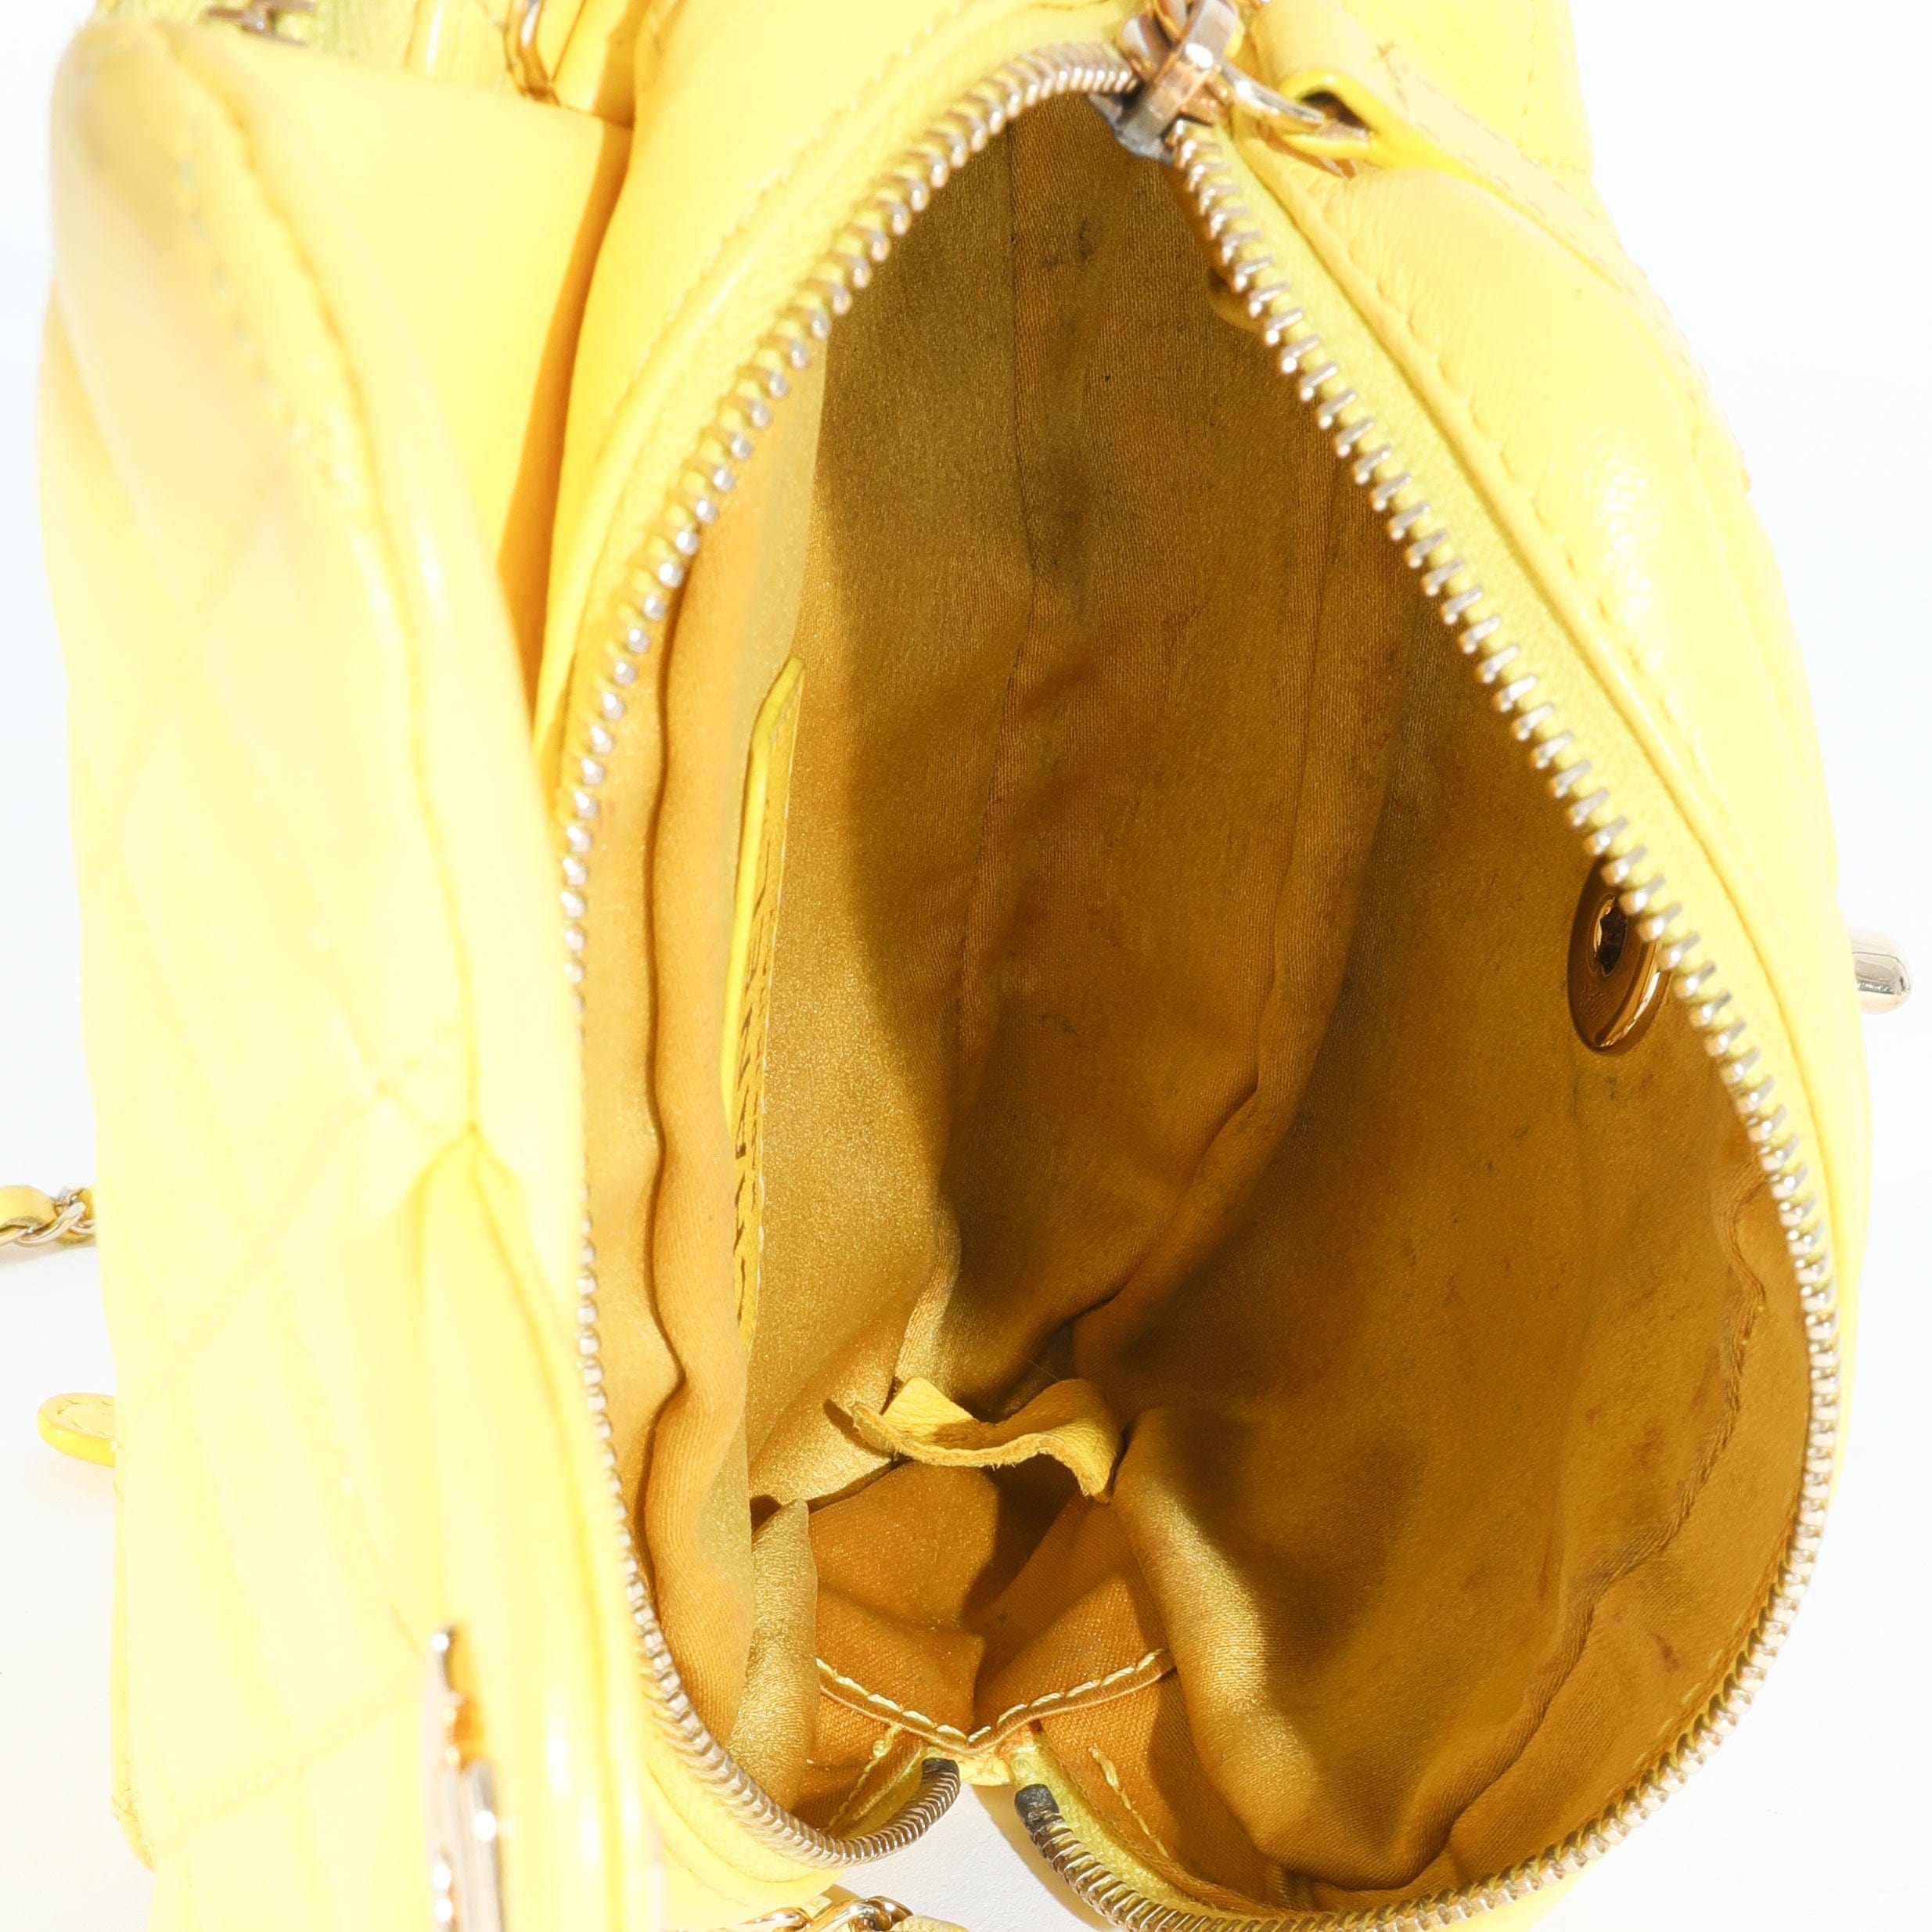 Chanel Chanel Yellow Lambskin Mini Flap Wallet On Chain